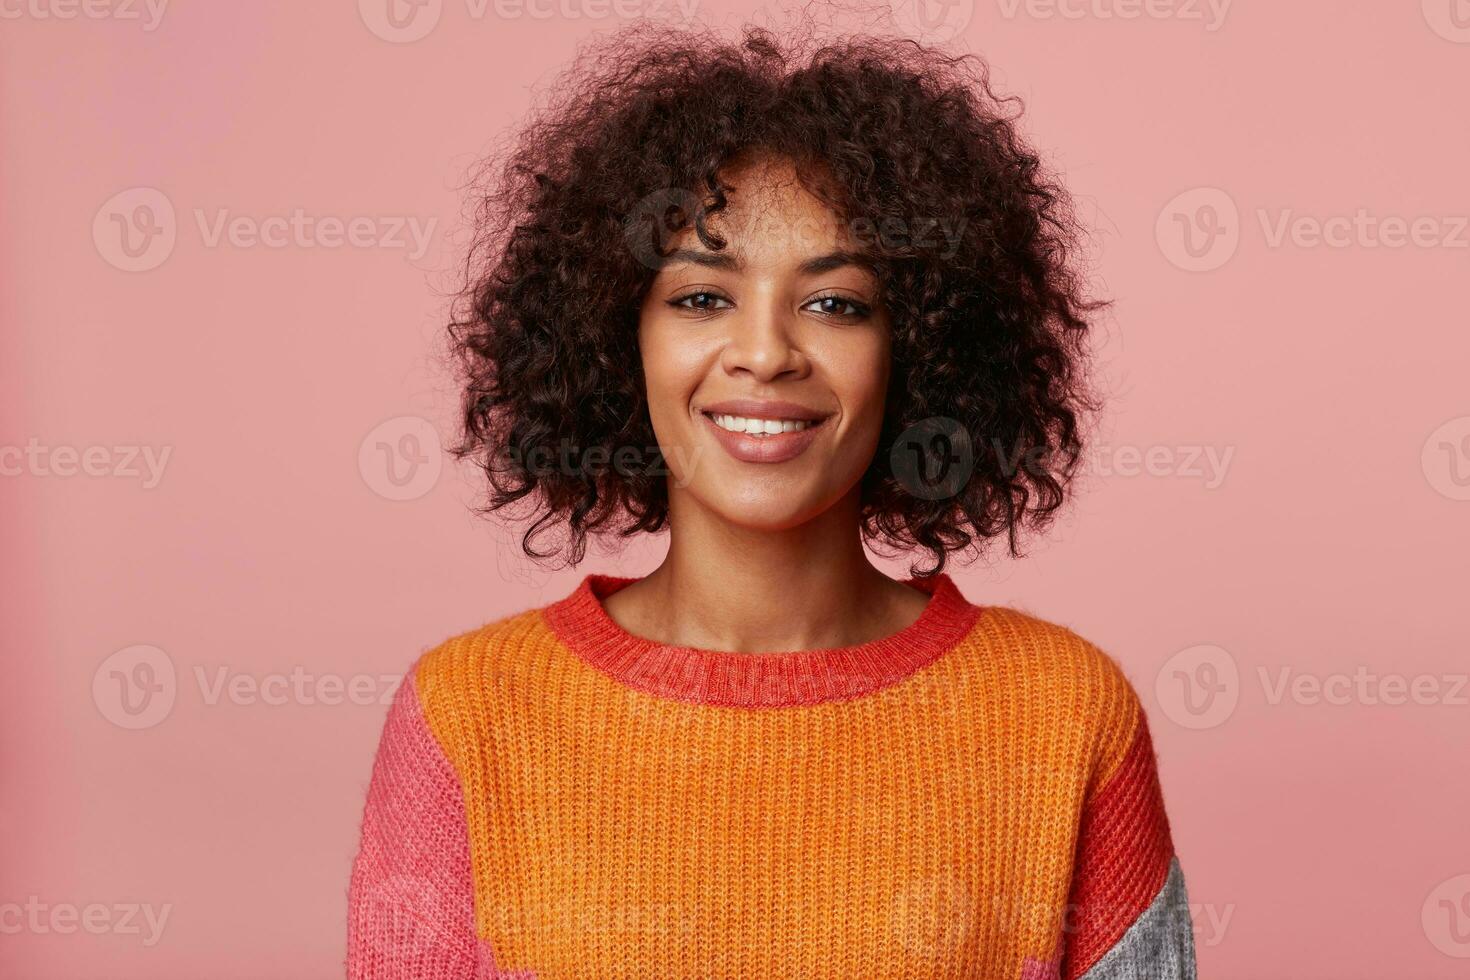 stänga upp porträtt av positiv optimistisk charmig afrikansk amerikan flicka med afro frisyr utseende med nöje, med vänlig leende, bär färgrik långärmad, isolerat på rosa bakgrund foto